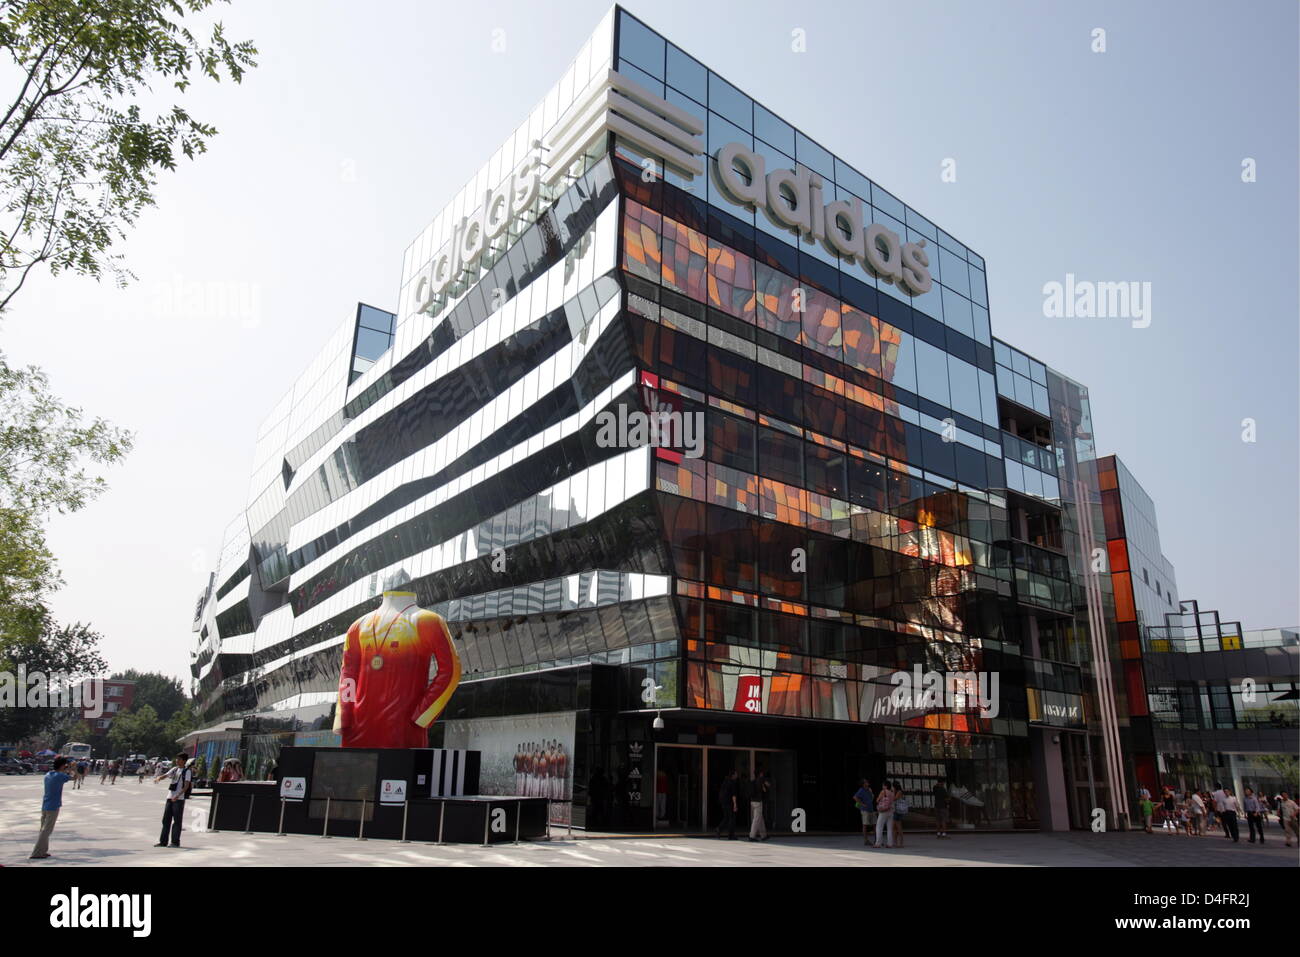 Vista exterior del nuevo "Centro" de la marca Adidas, hasta ahora la tienda  adidas más grande del mundo, en Beijing, China, 19 de agosto de 2008. La  tienda abarca 3,170m2 y cuatro